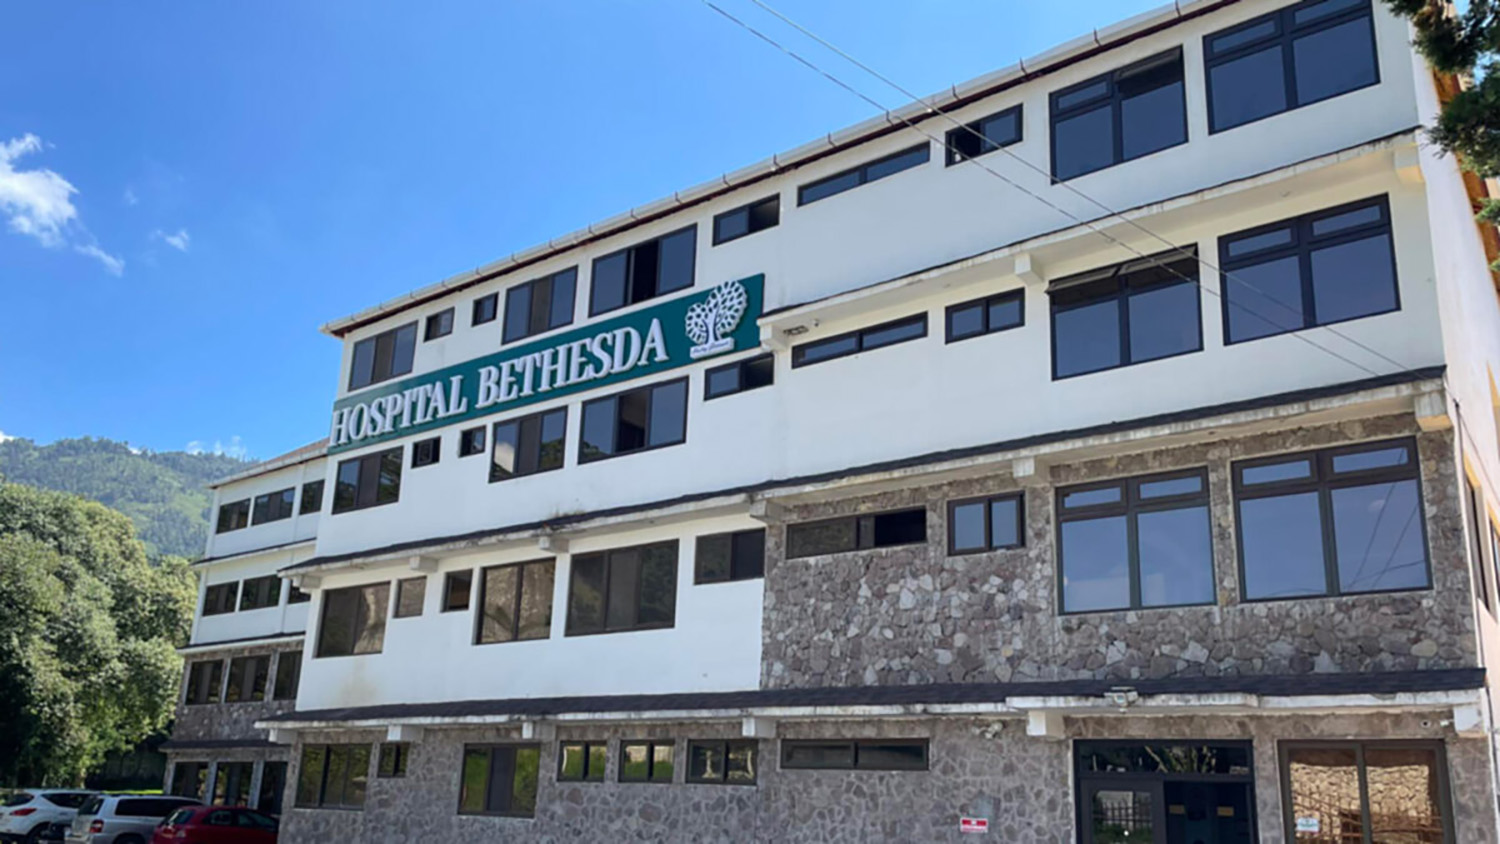 El Hospital Bethesda de Sanando Guatemala, es un ministerio médico fundado por el médico y presbítero metodista unido Dr. Luke Rhyee. Foto cortesía de la Conferencia Anual de Carolina del Sur.